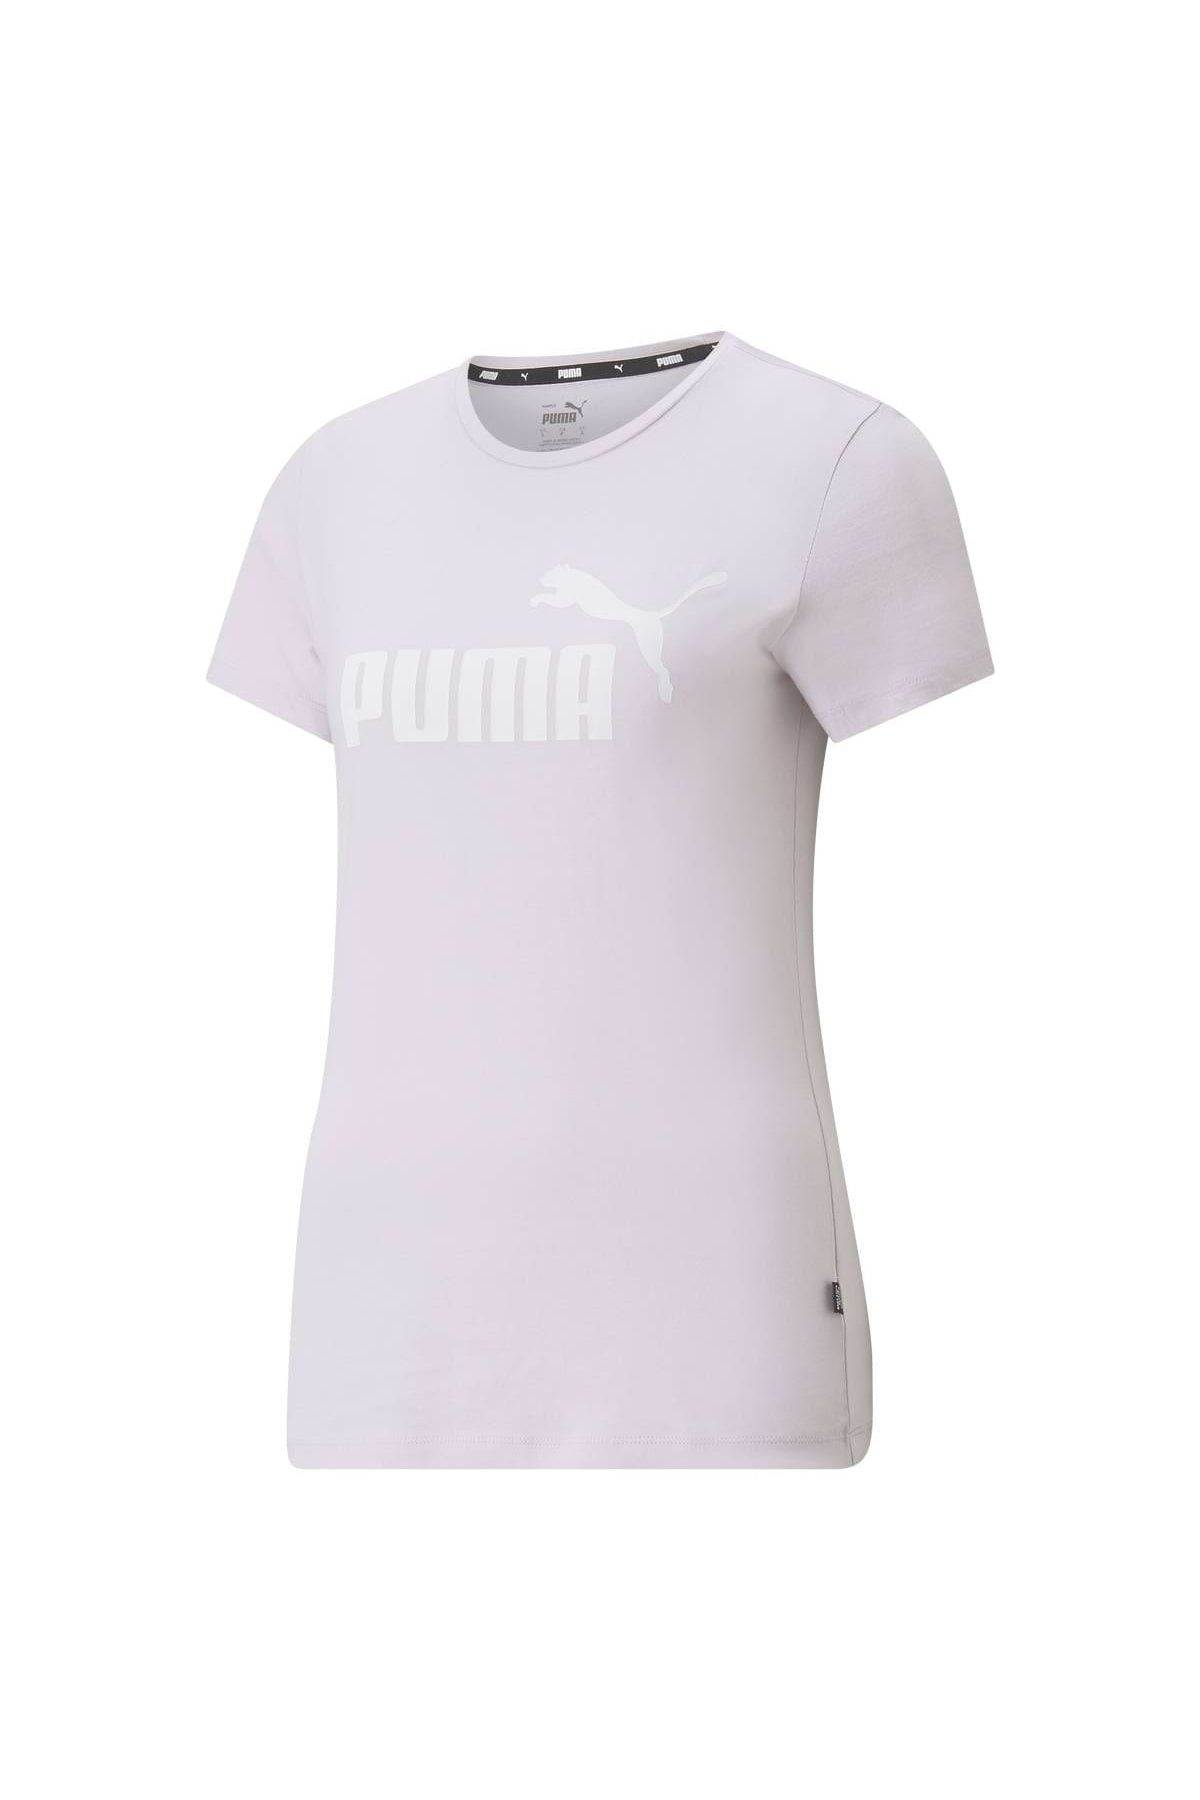 Puma Damen T-Shirt - Essentials Logo Tee (S), Rundhals, Kurzarm, uni -  Trendyol